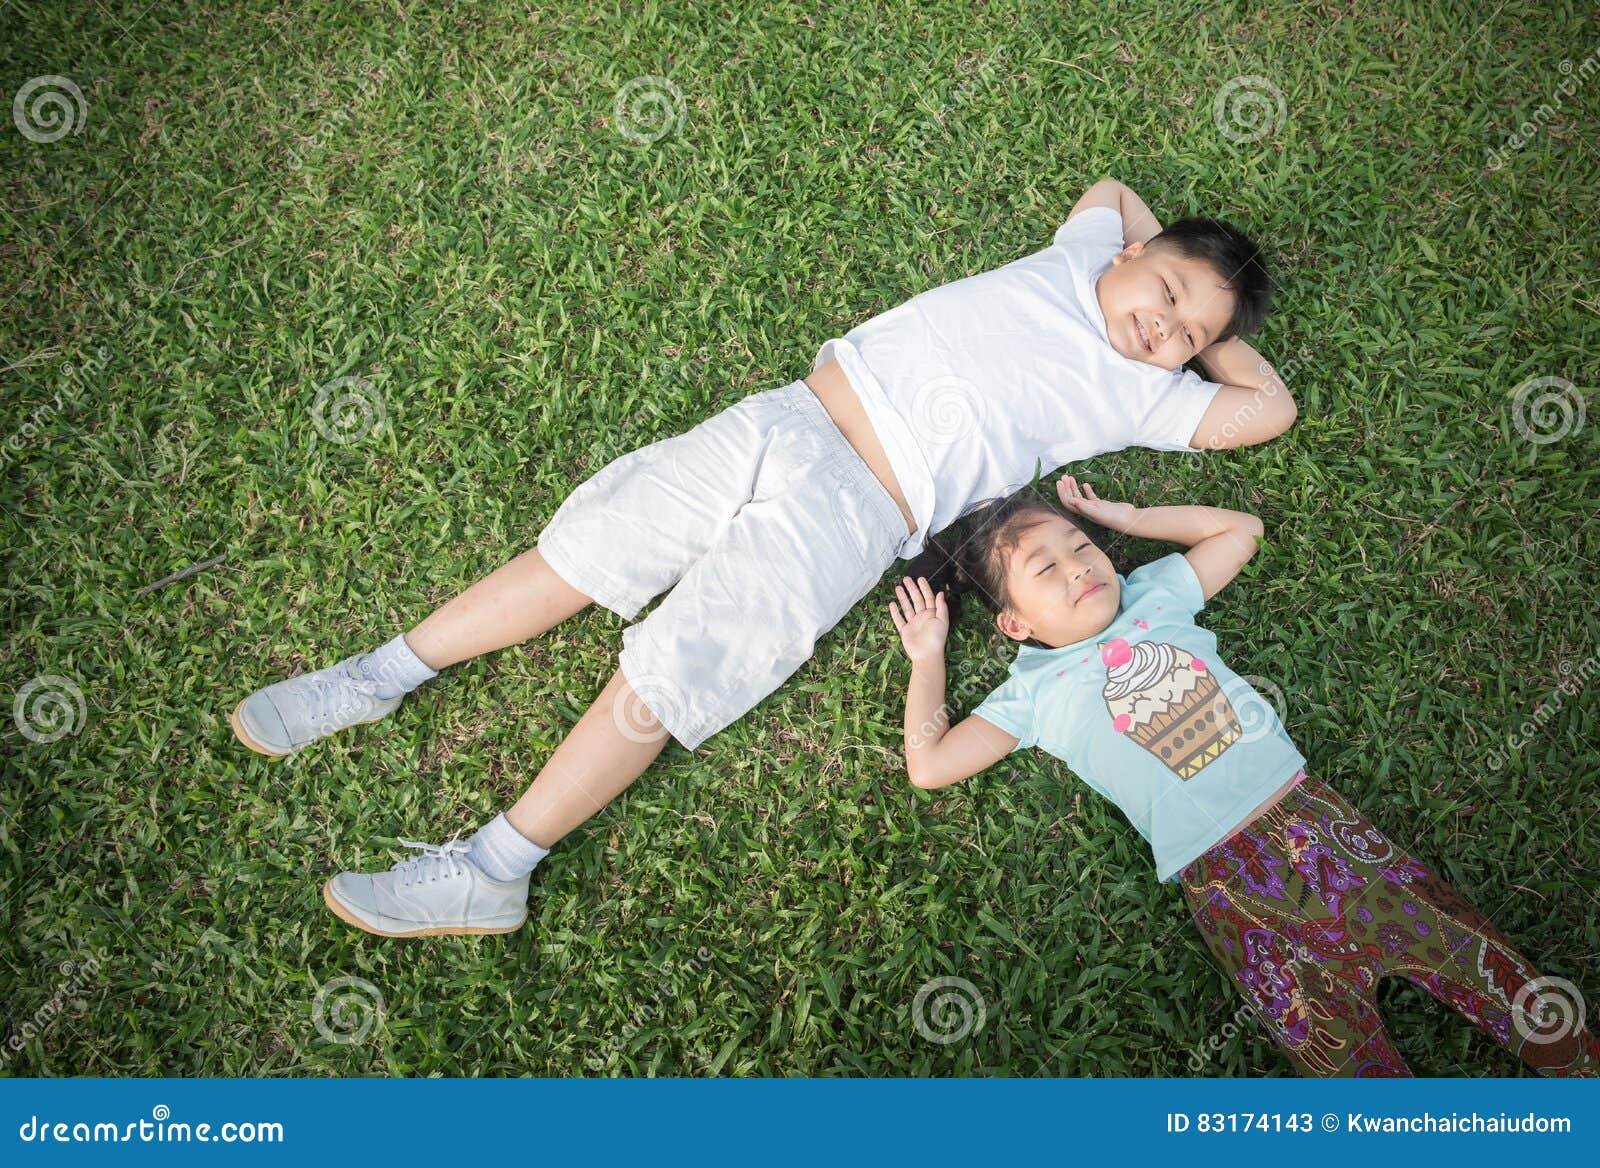 smile children lie down on grass